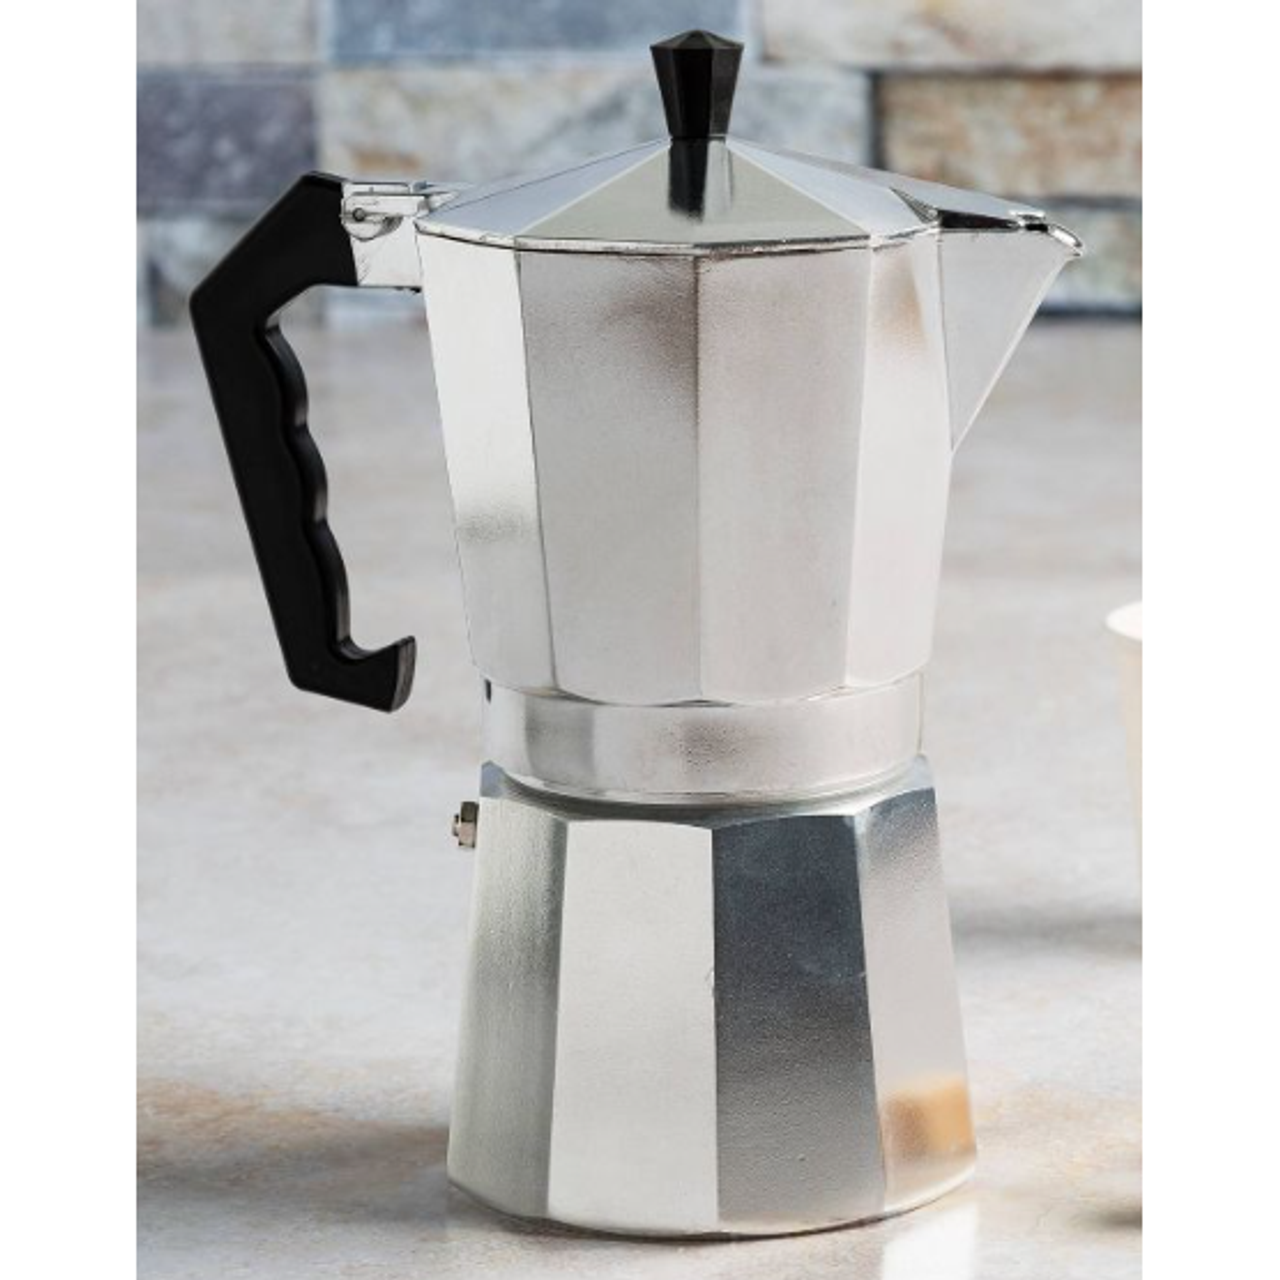 Next Generation of the Moka Pot — Stovetop Espresso Maker at 9 Bar